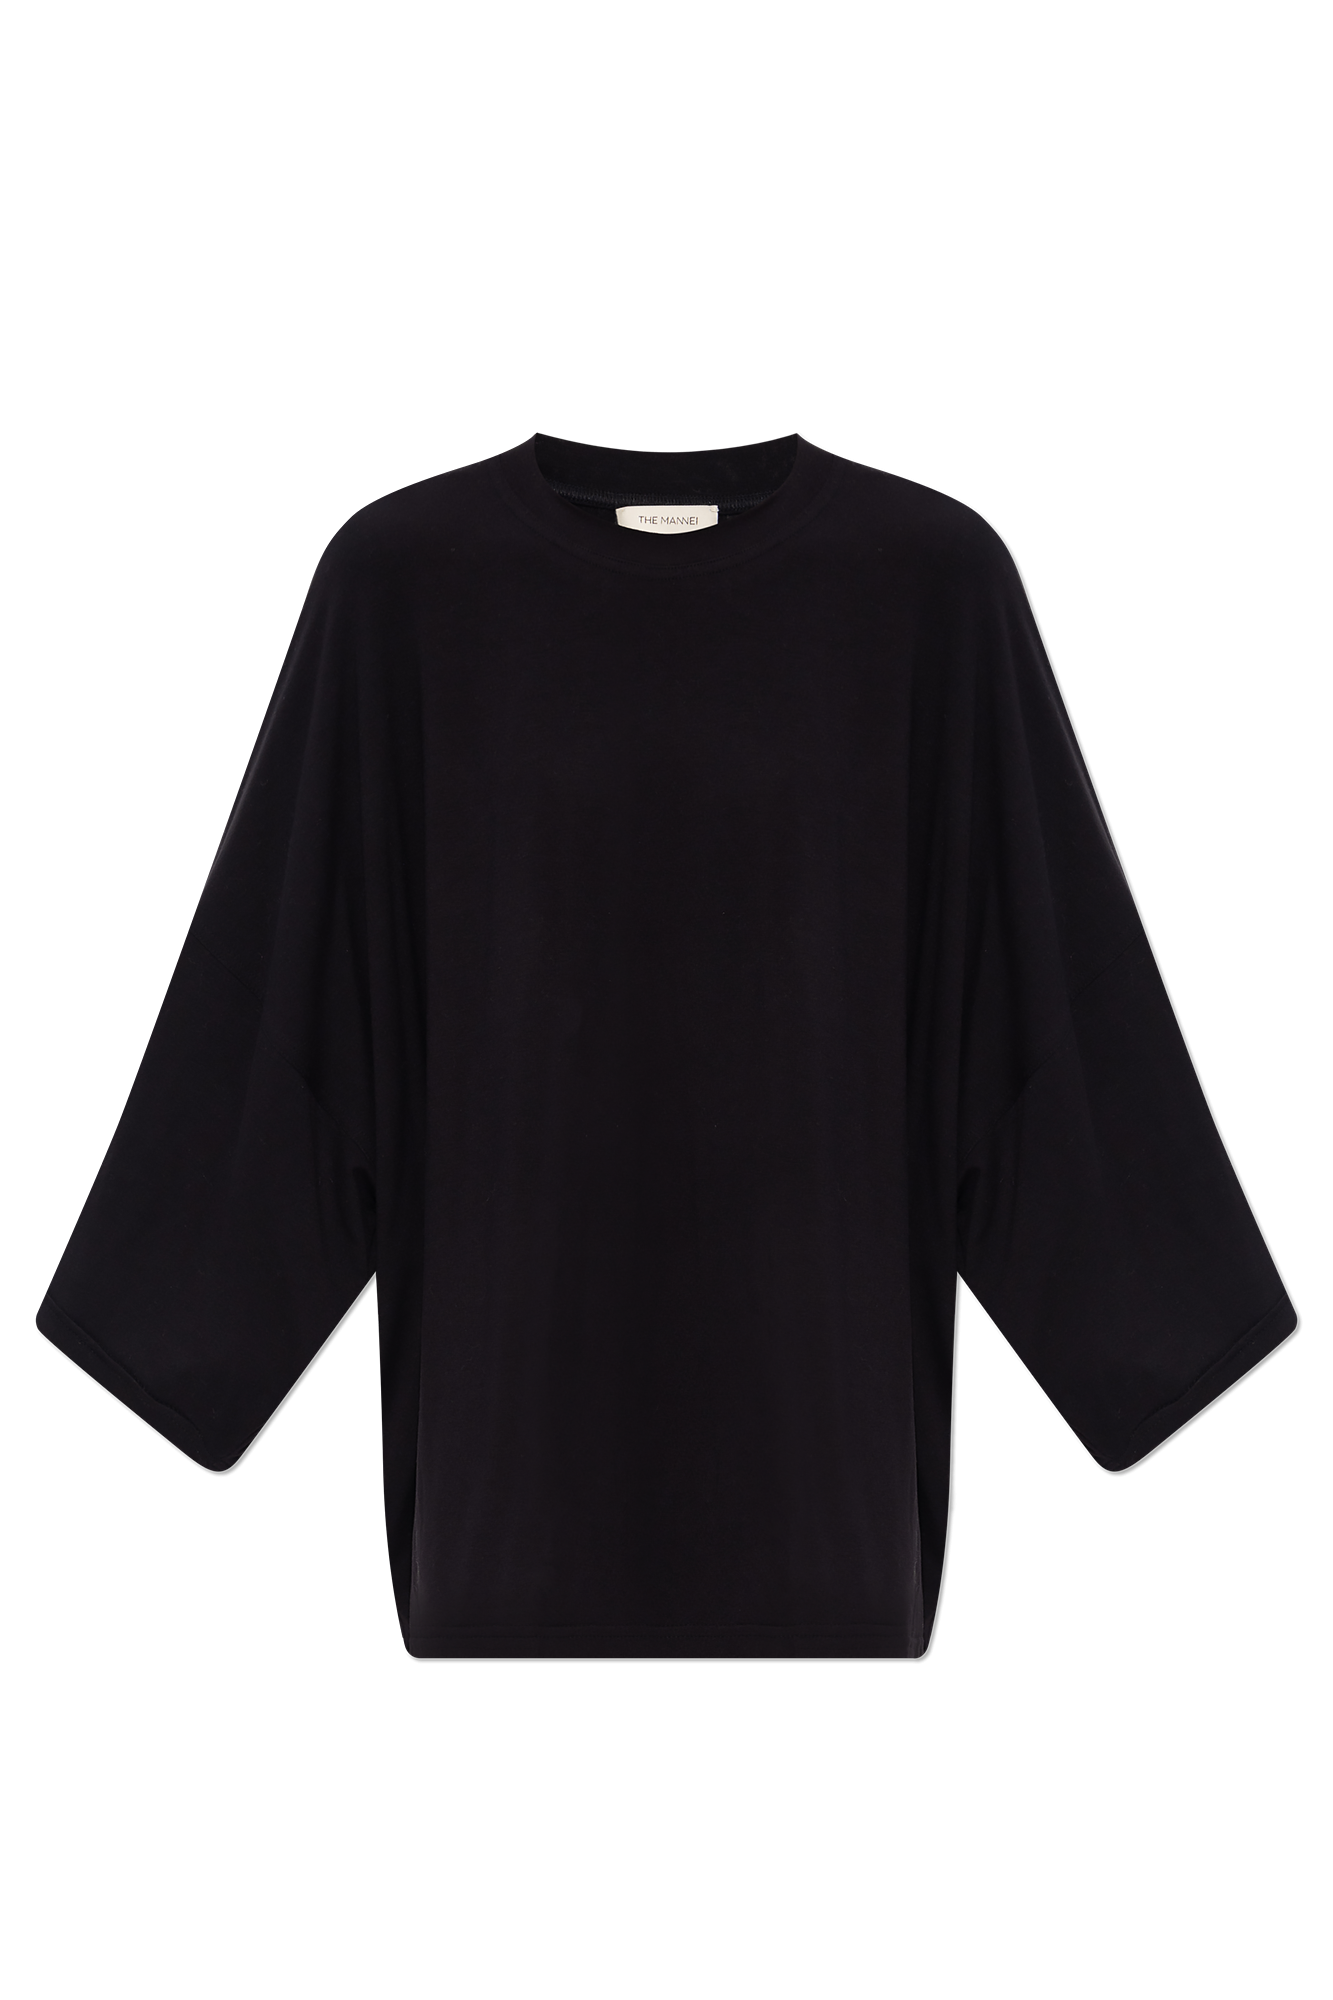 The Mannei ‘Malibu’ oversize T-shirt